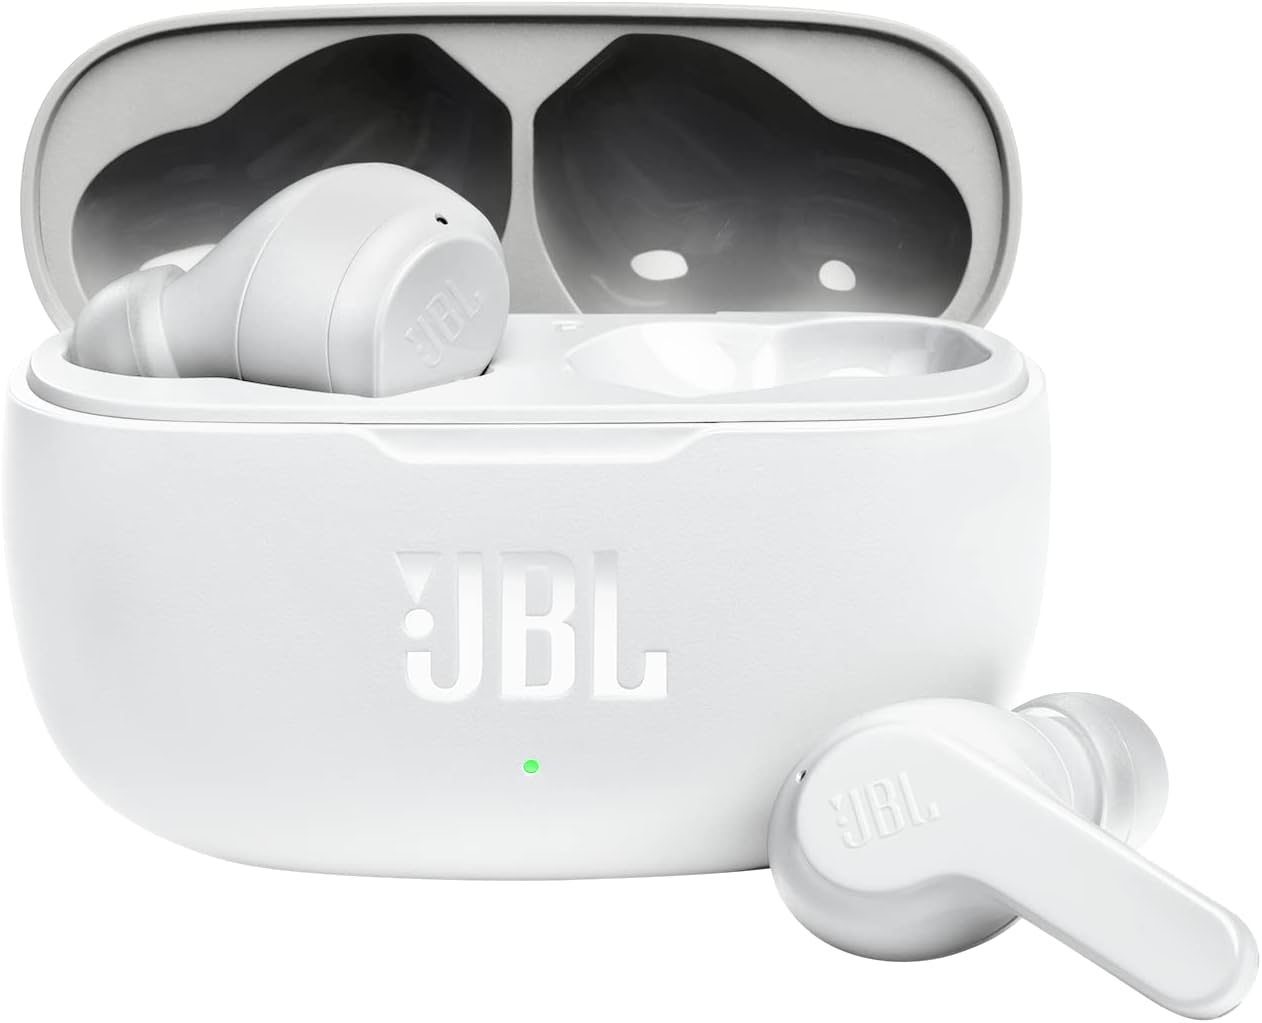 سماعات رأس بلوتوث لاسلكية BL T280 TWS X2 داخل الأذن ستيريو رياضية بخاصية إلغاء الضوضاء مع ميكروفون وحقيبة شحن، أبيض